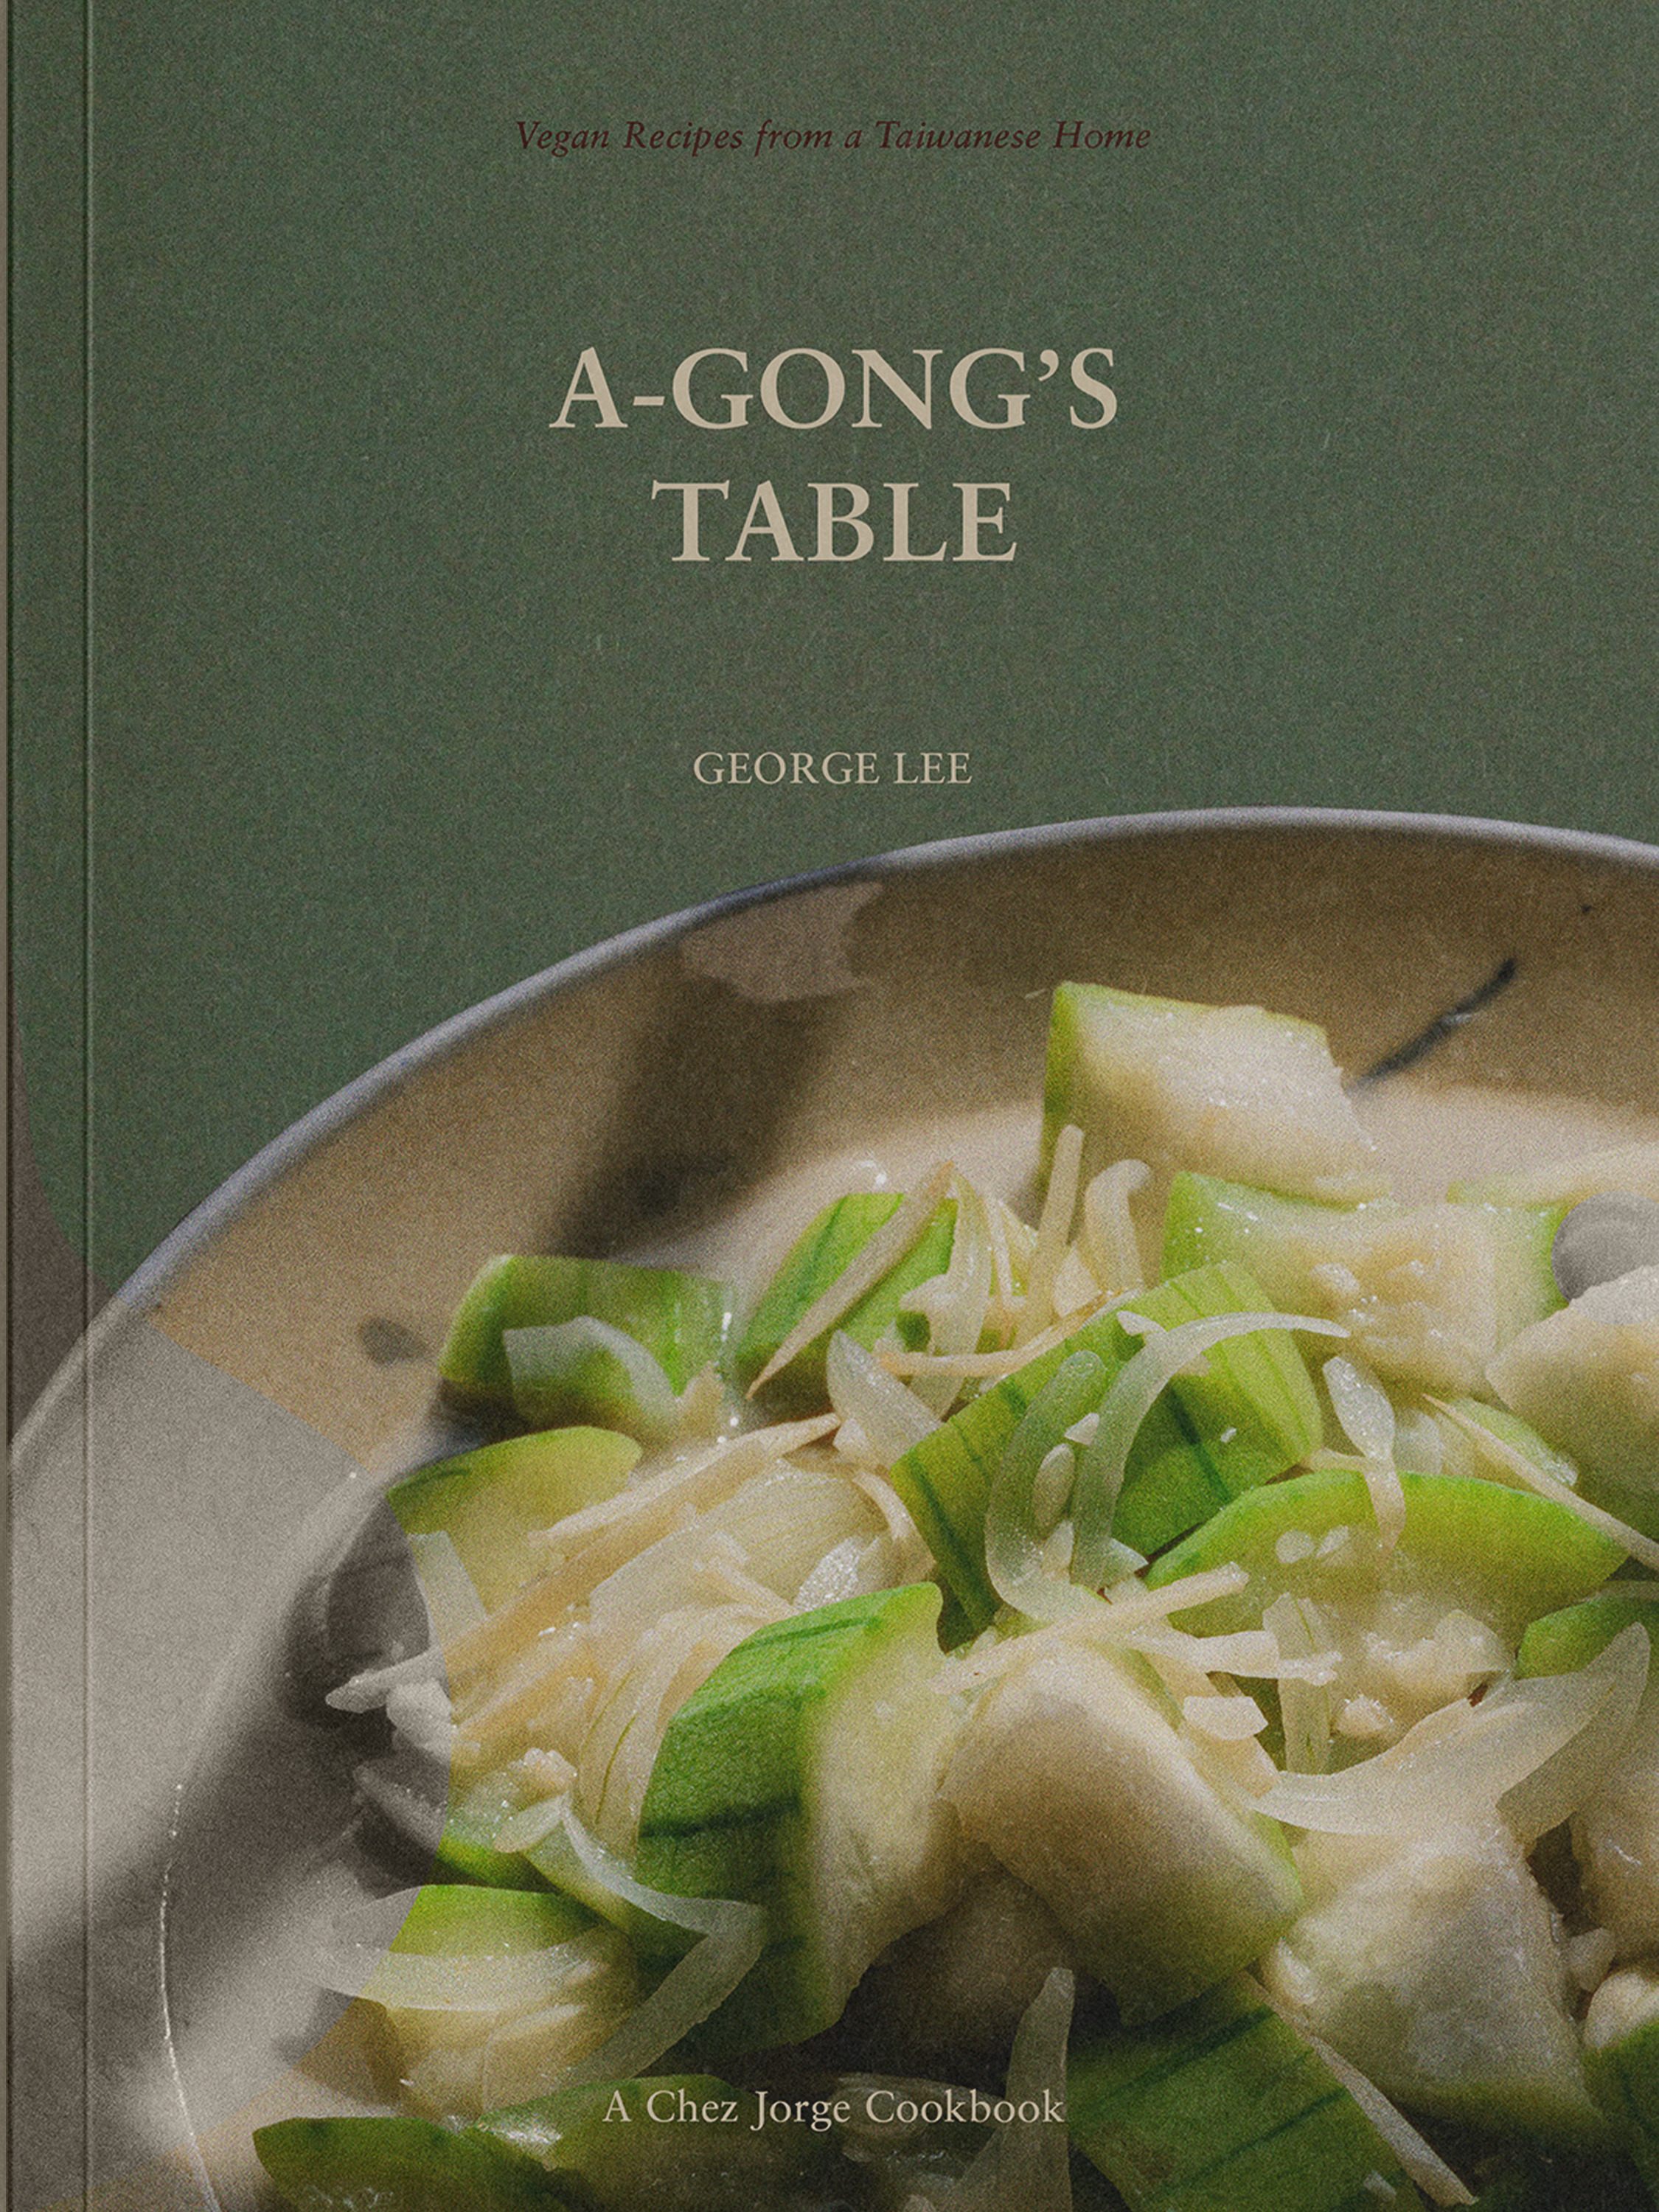 Pour assembler le livre, Lee a rassemblé des recettes végétaliennes provenant de diverses sources.